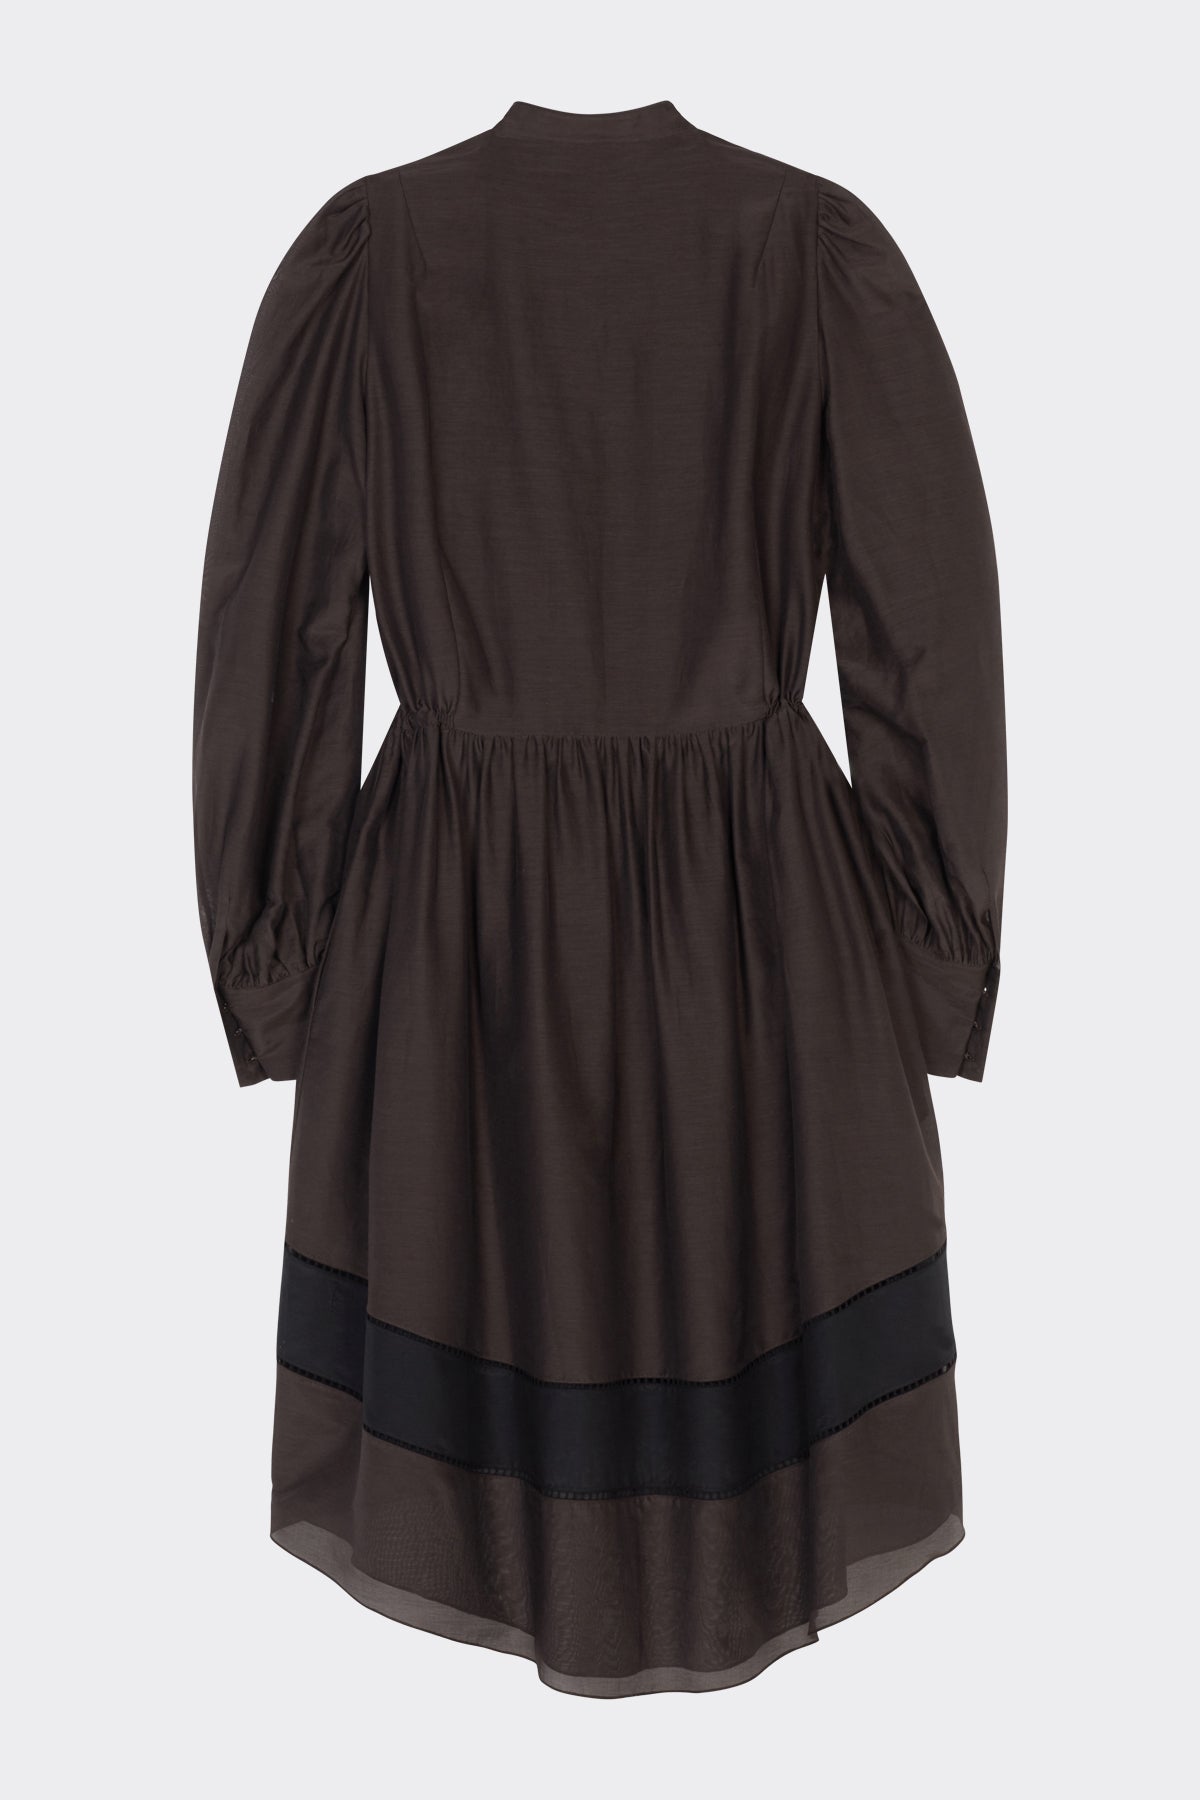 Pippa Dress in Brown Black | Noon By Noor